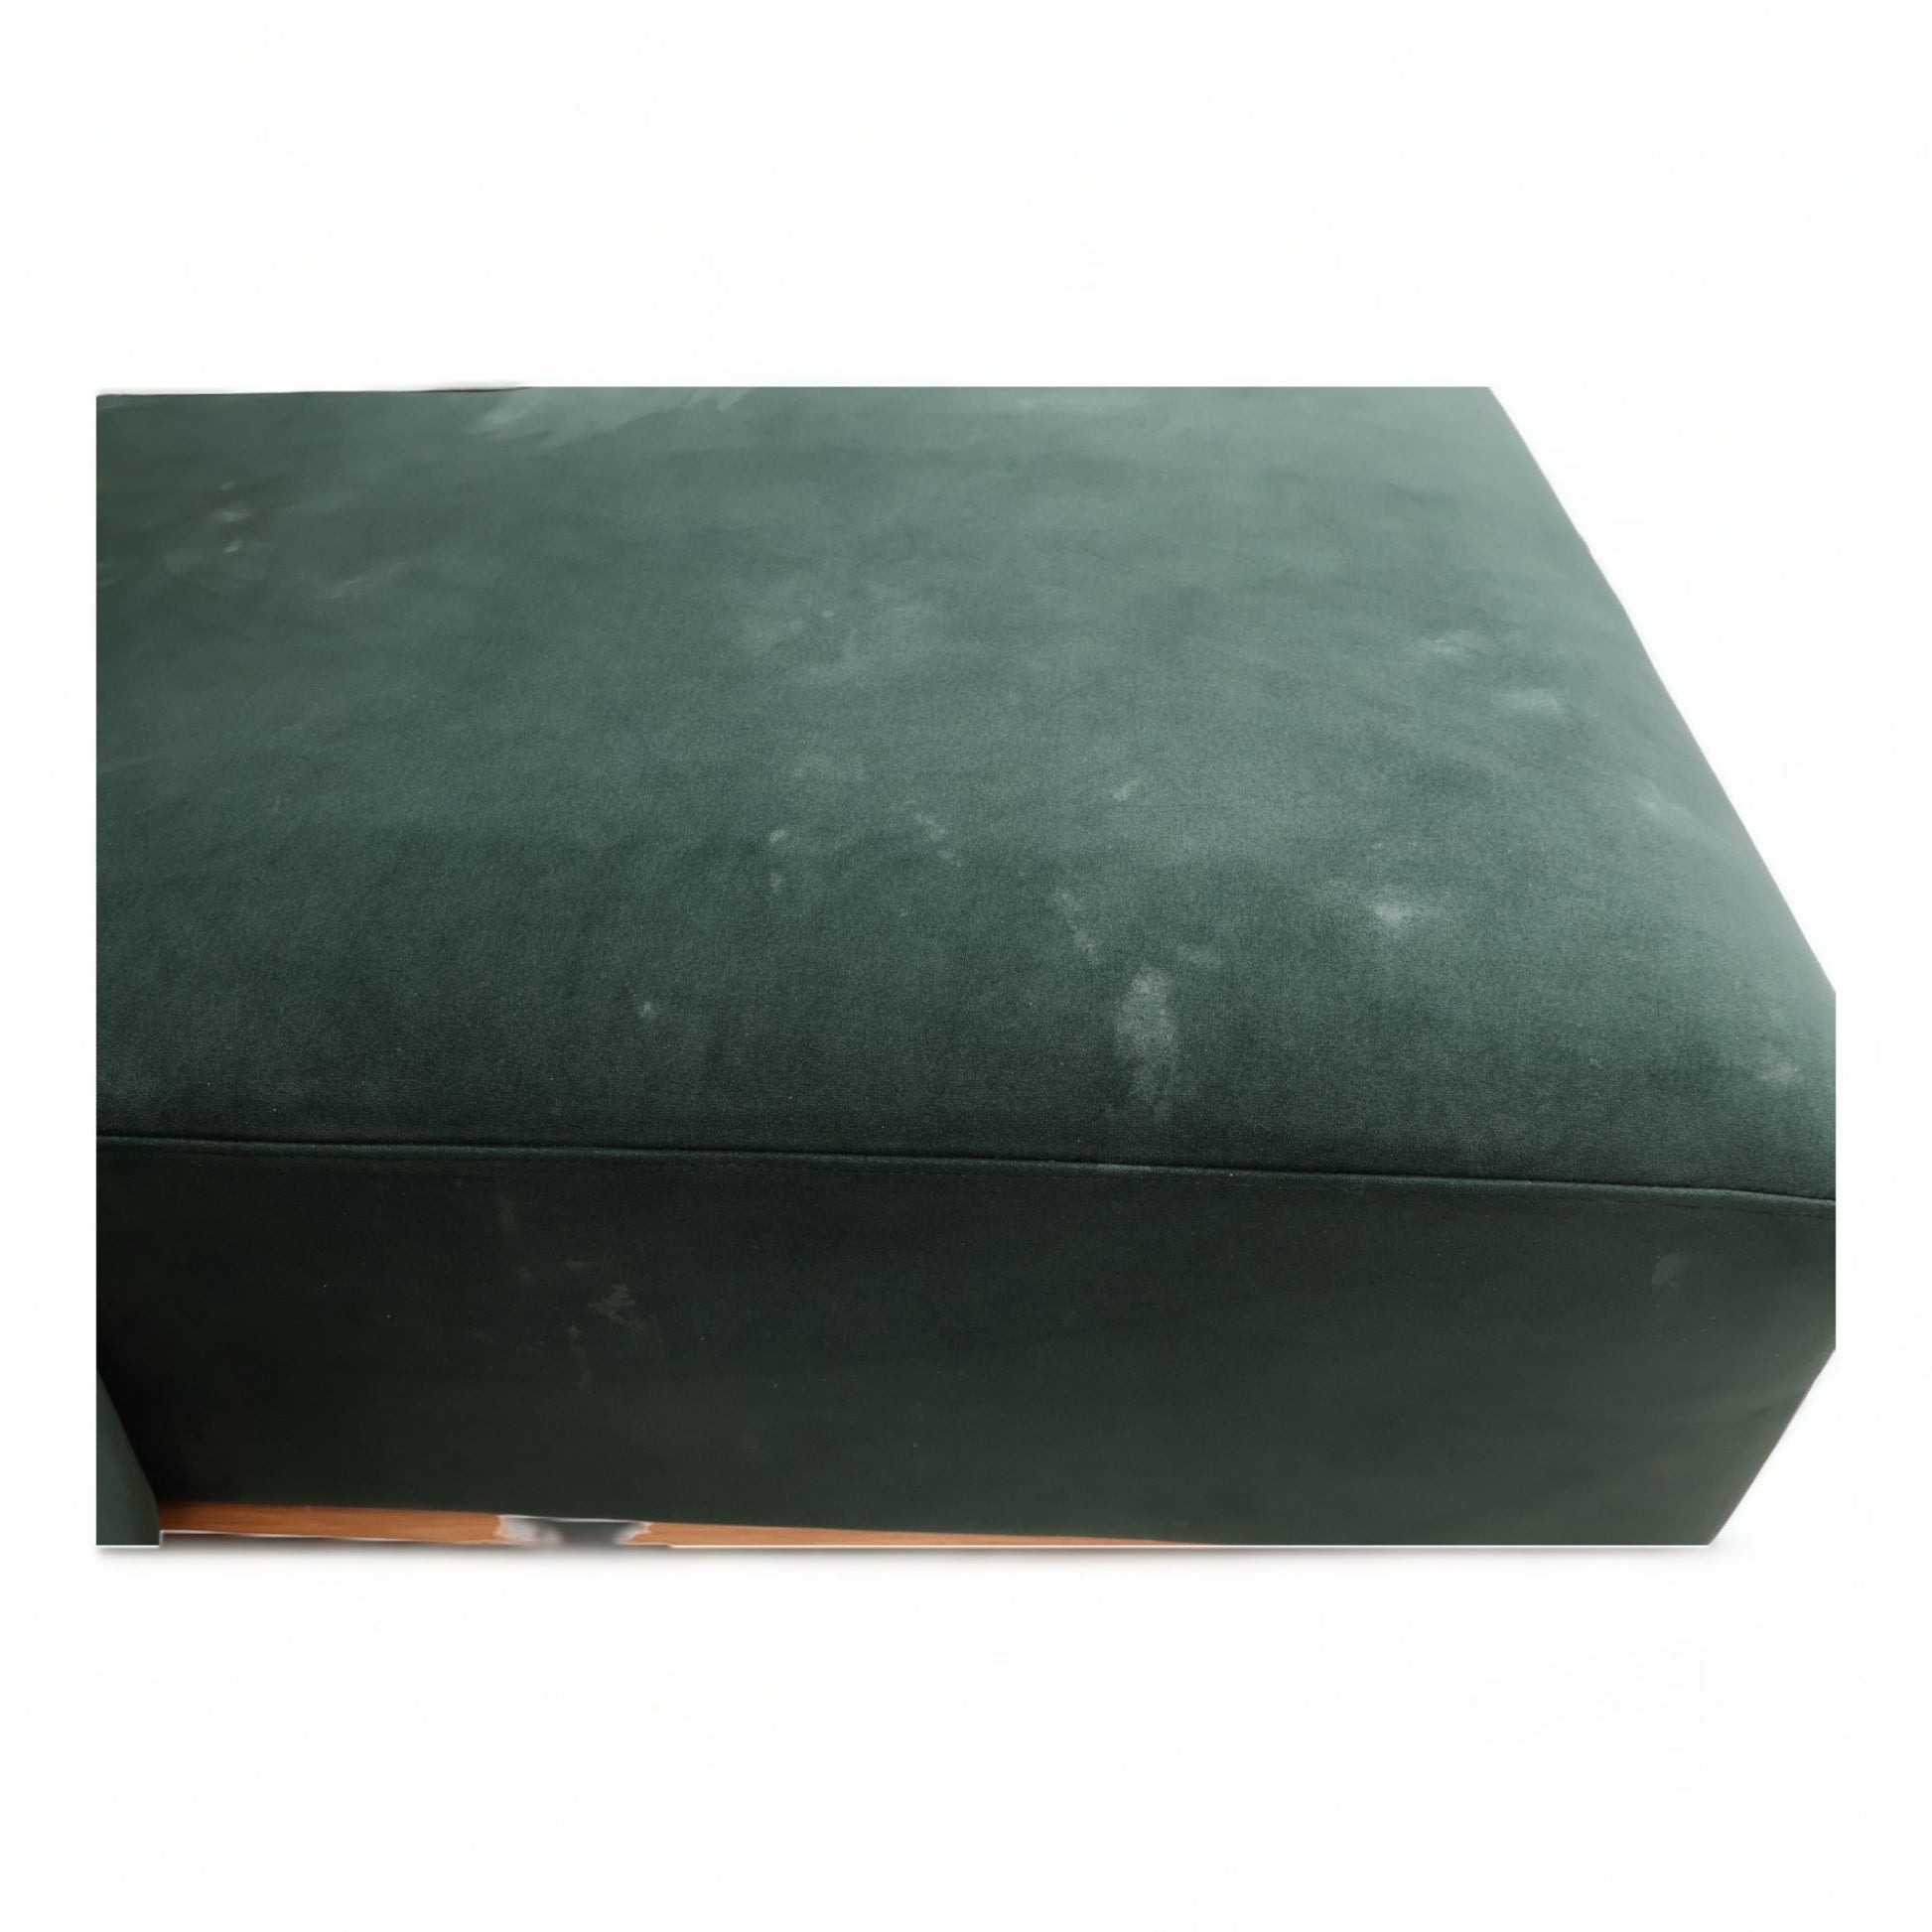 Nyrenset | Grønn VILMAR 3-seter sofa med sjeselong fra SofaCompany - Secundo